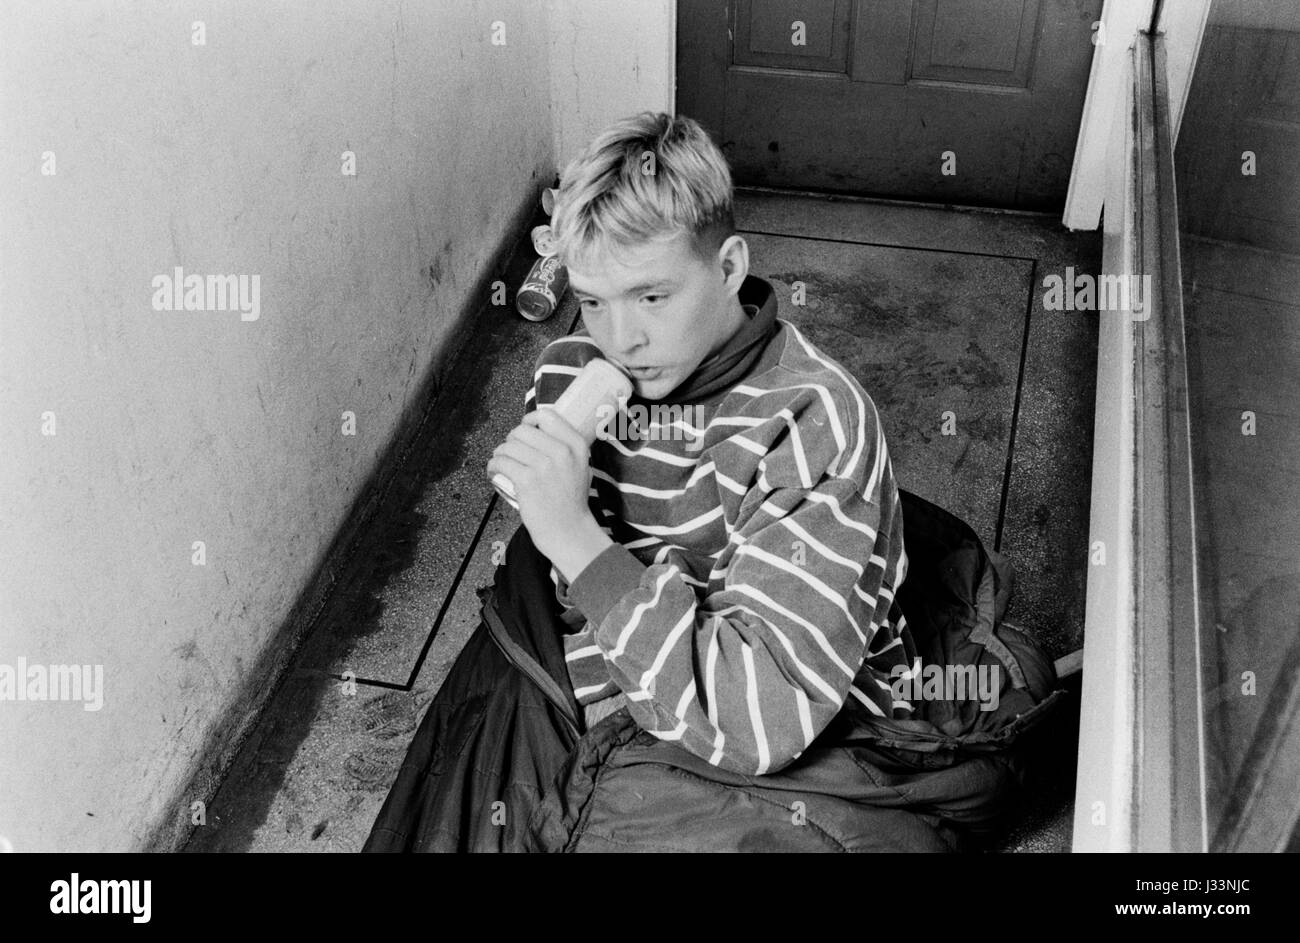 Drogen Großbritannien der 80er Jahre. Drogenabhängiger jugendlicher Klebstoff schnüffeln Schlafen auf der Straße London Eingang 80 s England HOMER 1983 SYKES Stockfoto